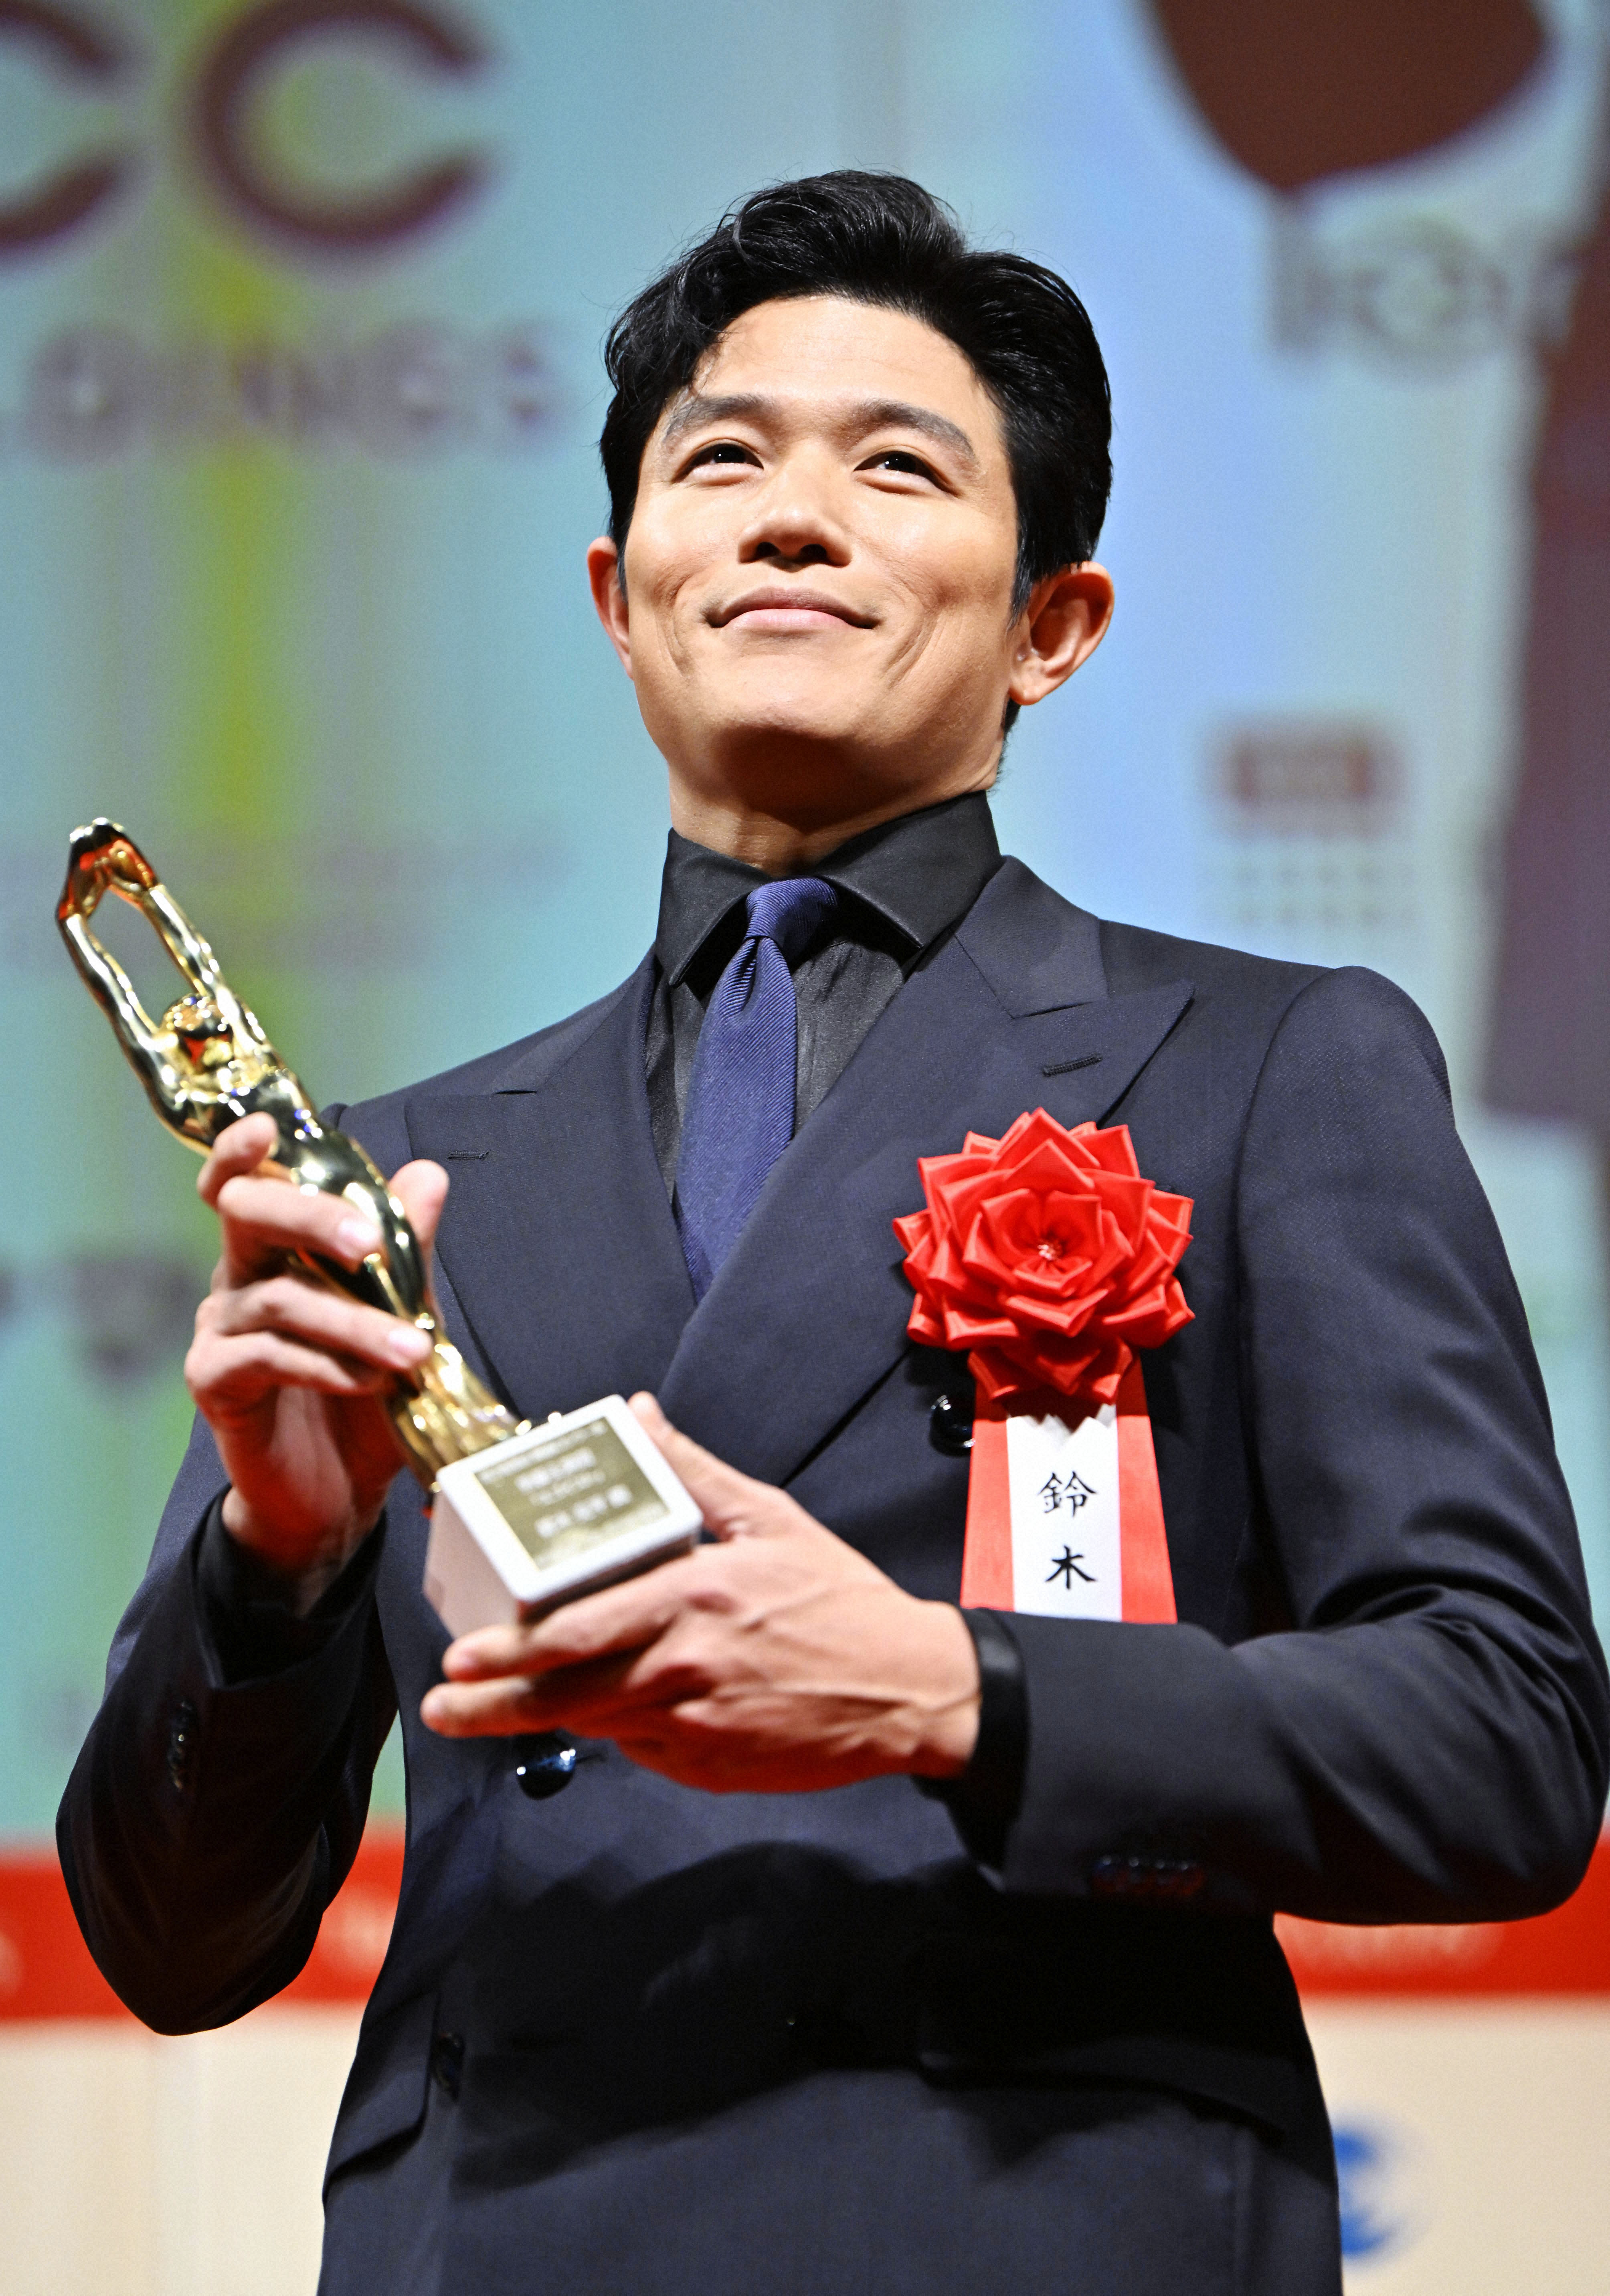 第78回毎日映コン表彰式でトロフィーを手にした男優主演賞の鈴木亮平